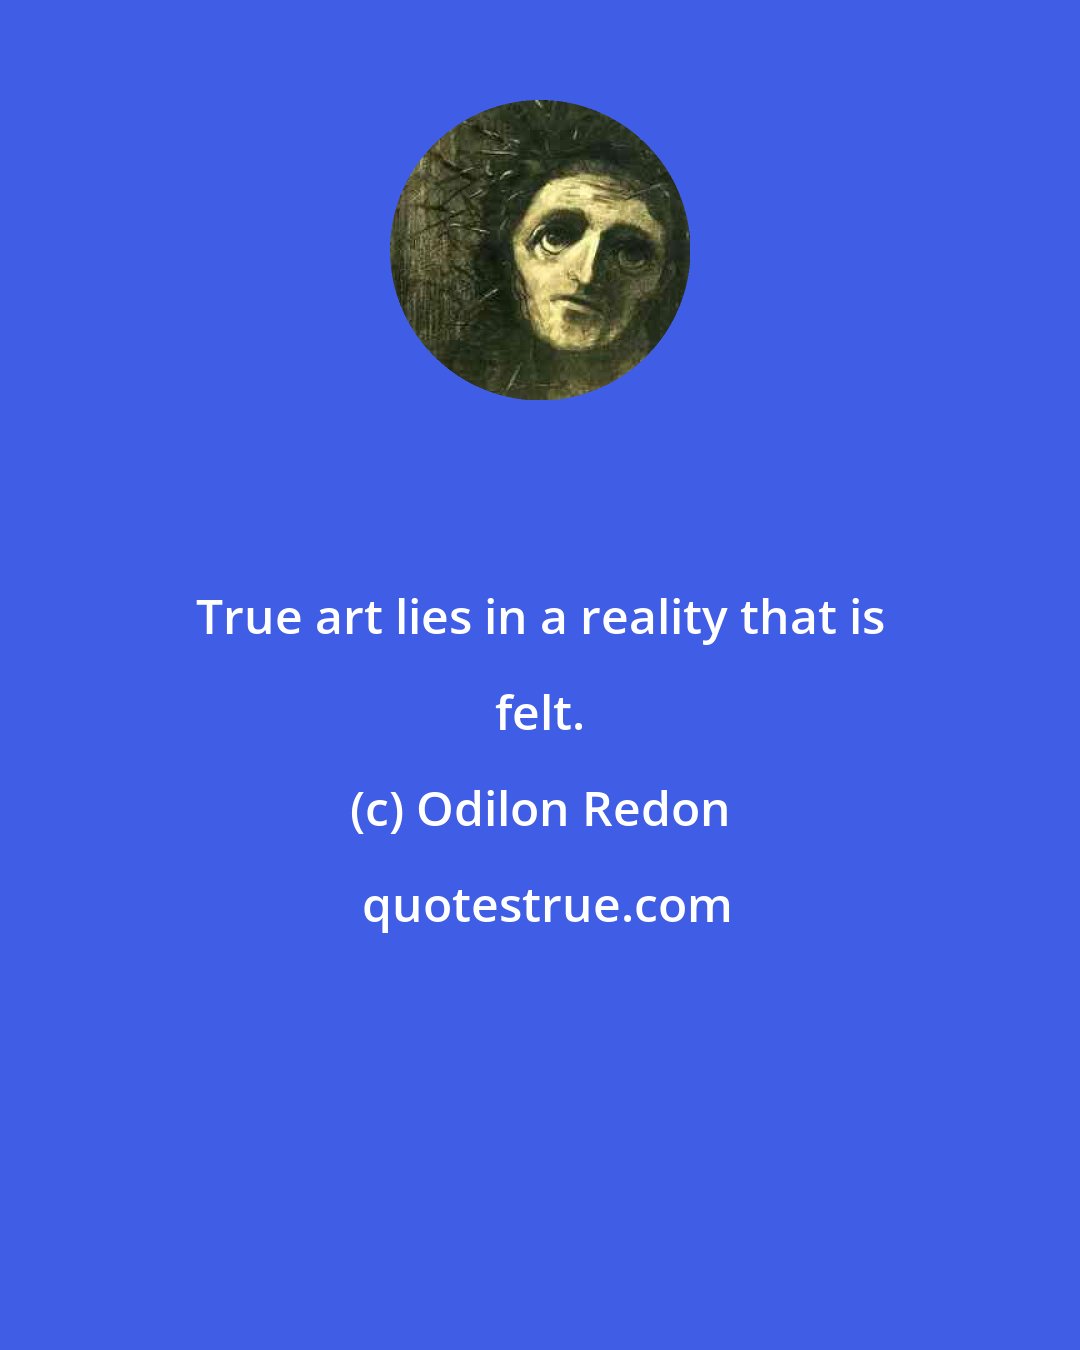 Odilon Redon: True art lies in a reality that is felt.